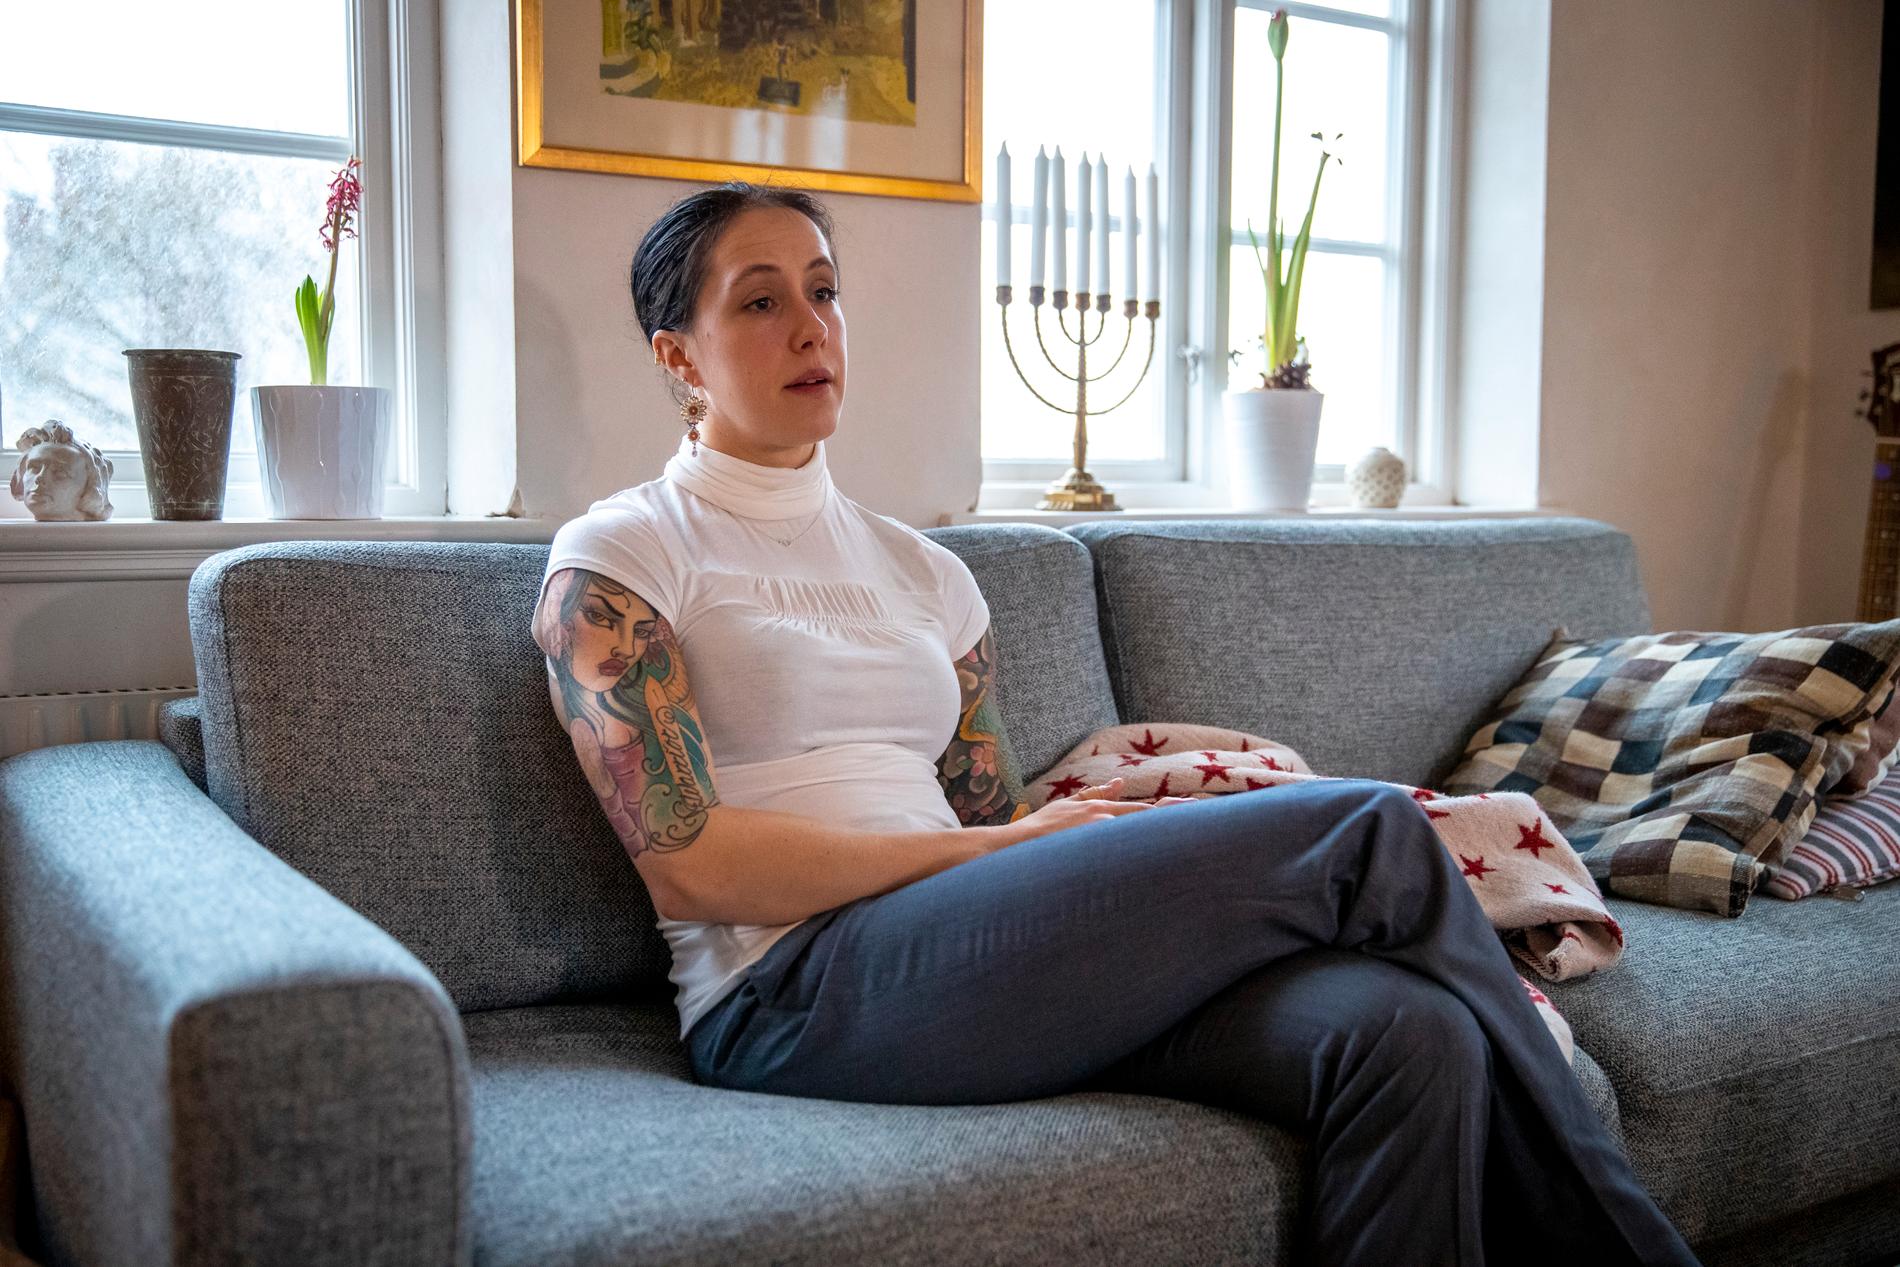 Någonstans i Sverige sitter en ung kvinna i ljus blus och gråa byxor på en soffa.